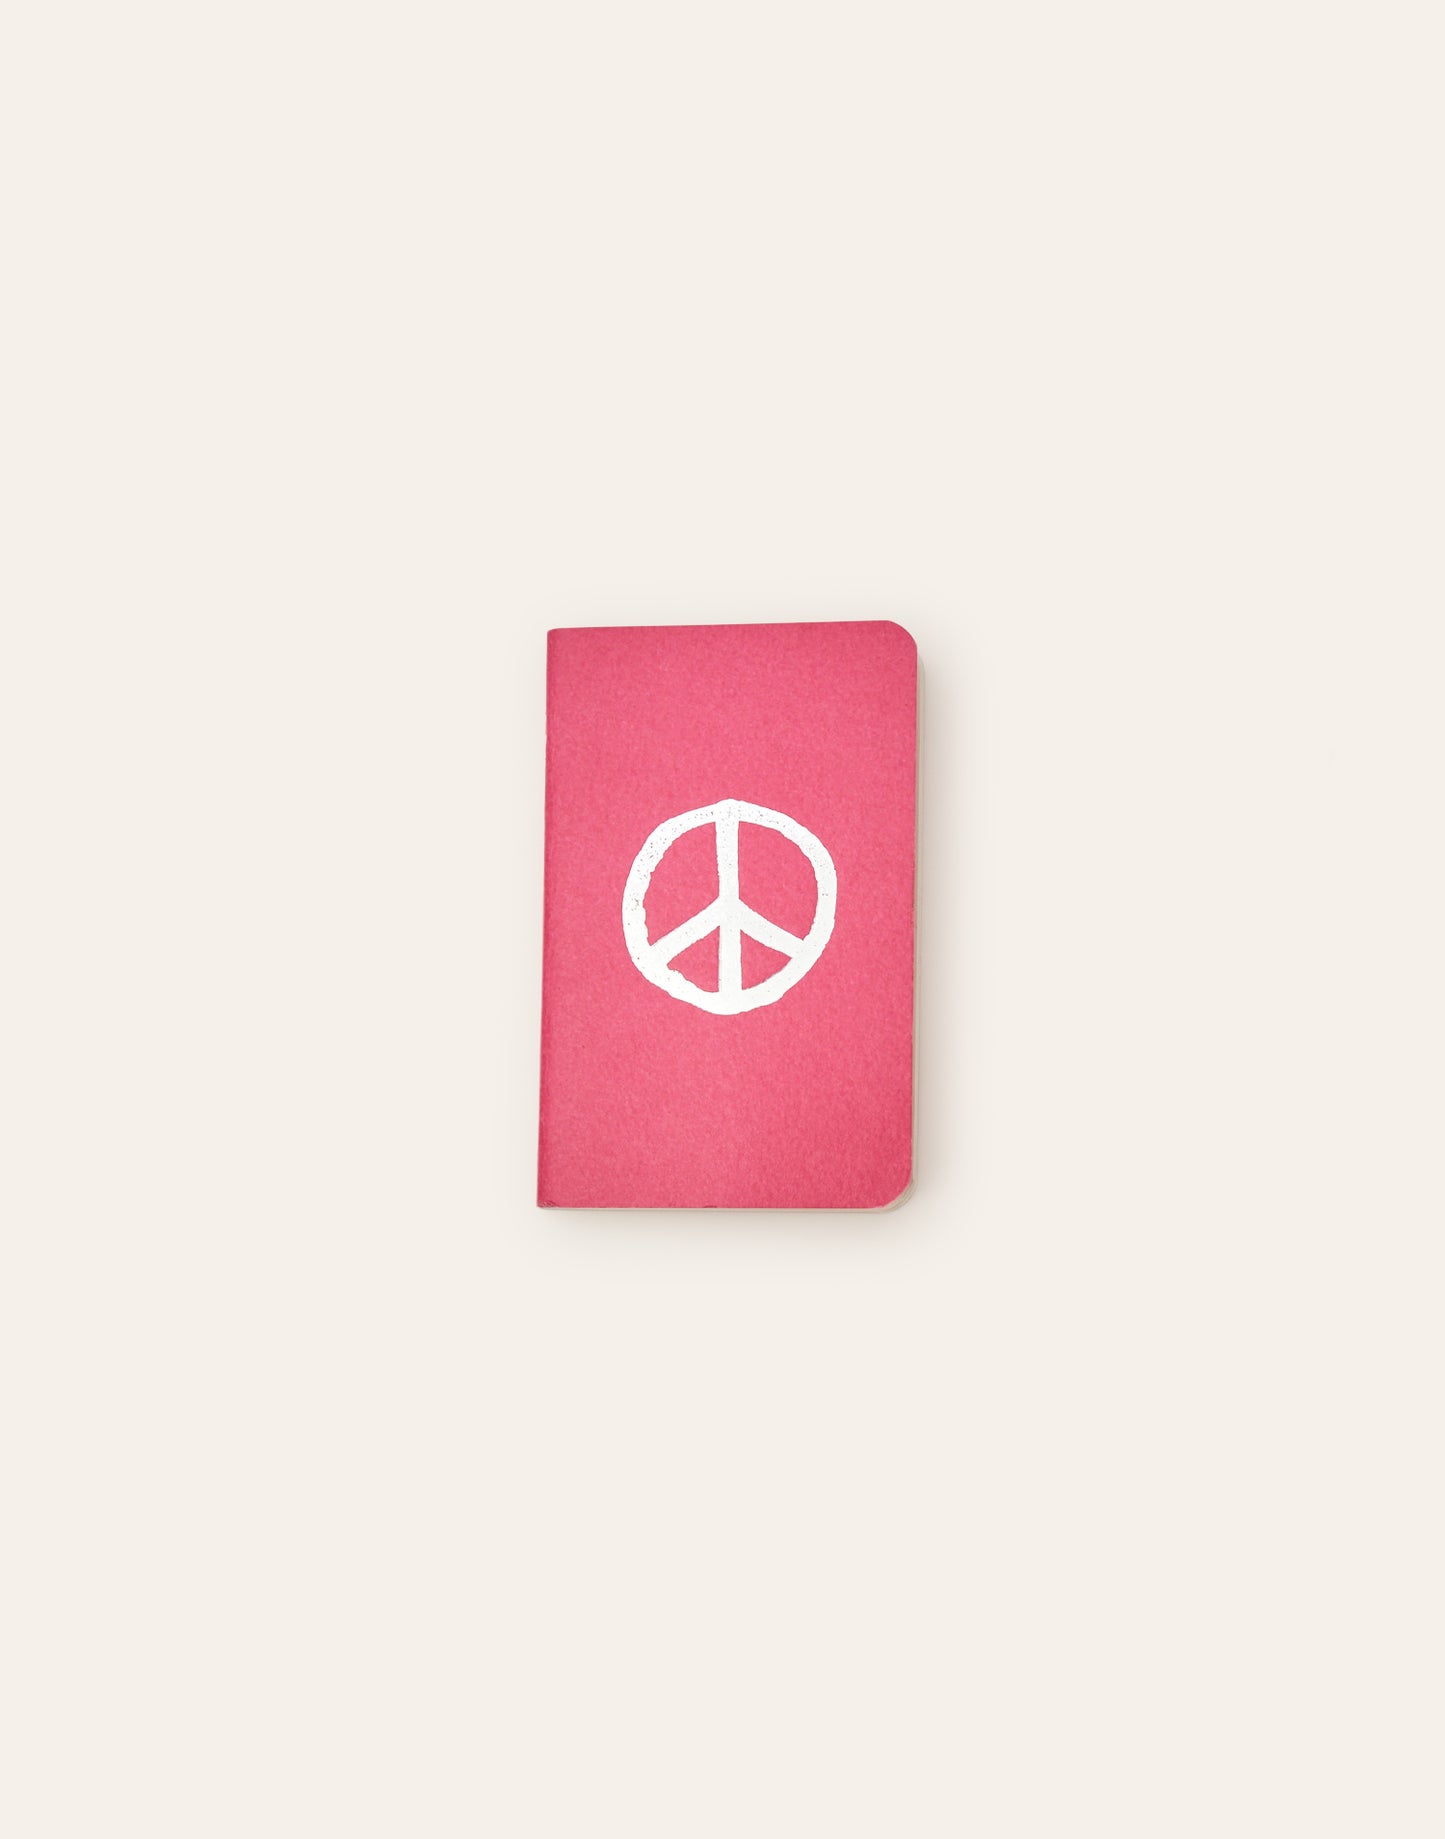 Notizbuch mit Friedenssymbol